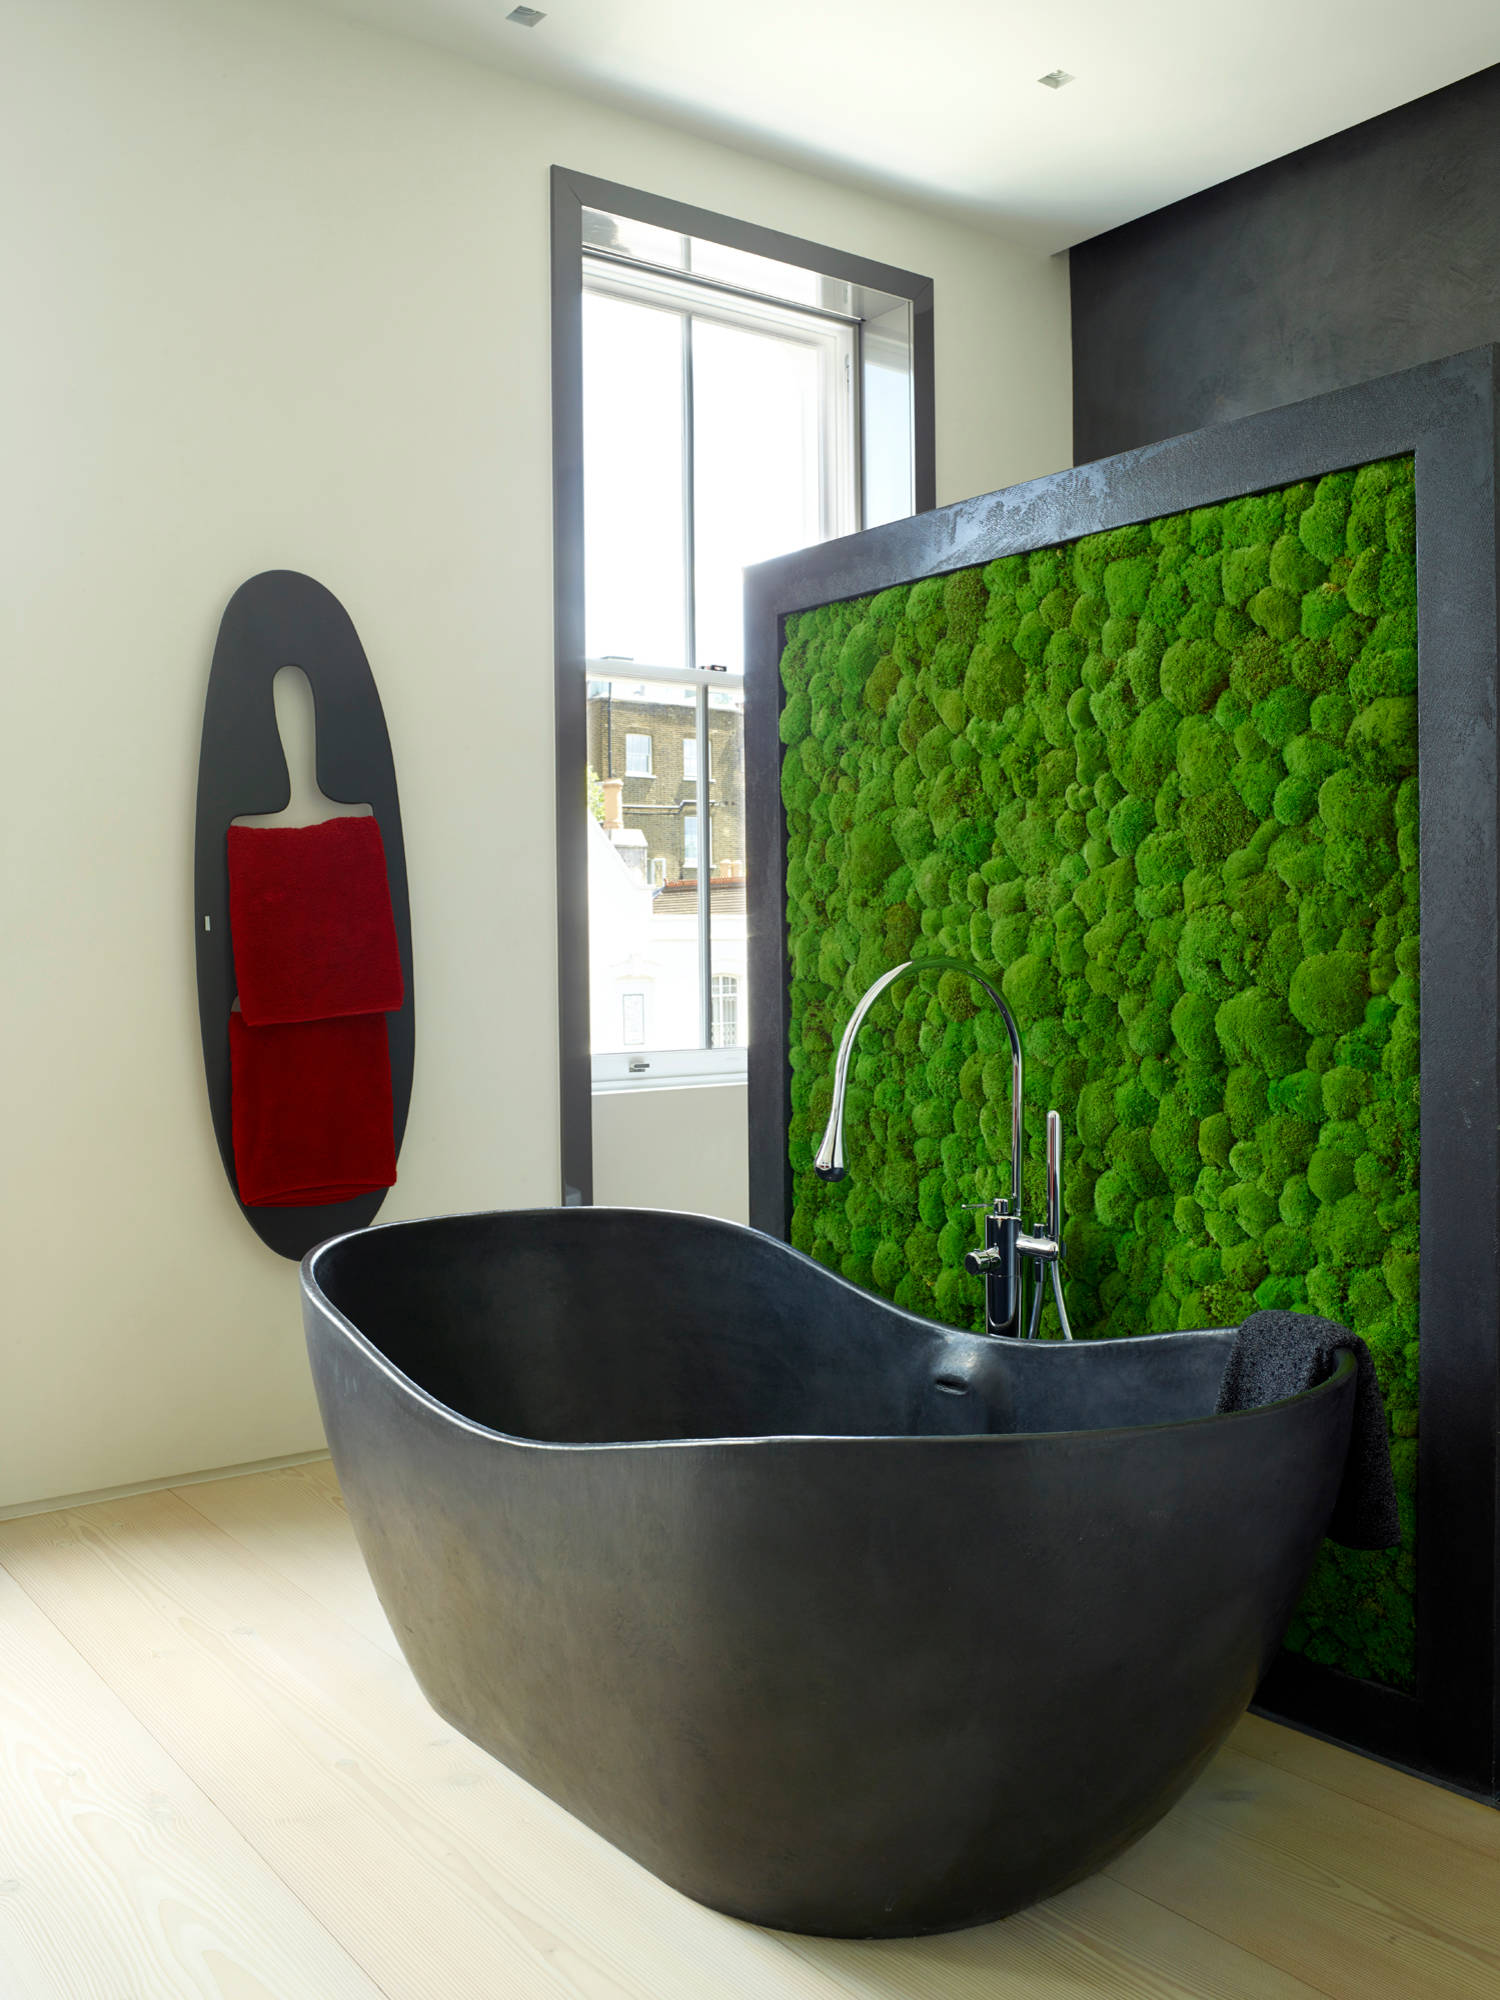 10 бюджетных вариантов отделки стен в ванной комнате — DOMEO Ремонт квартир и дизайн на укатлант.рф